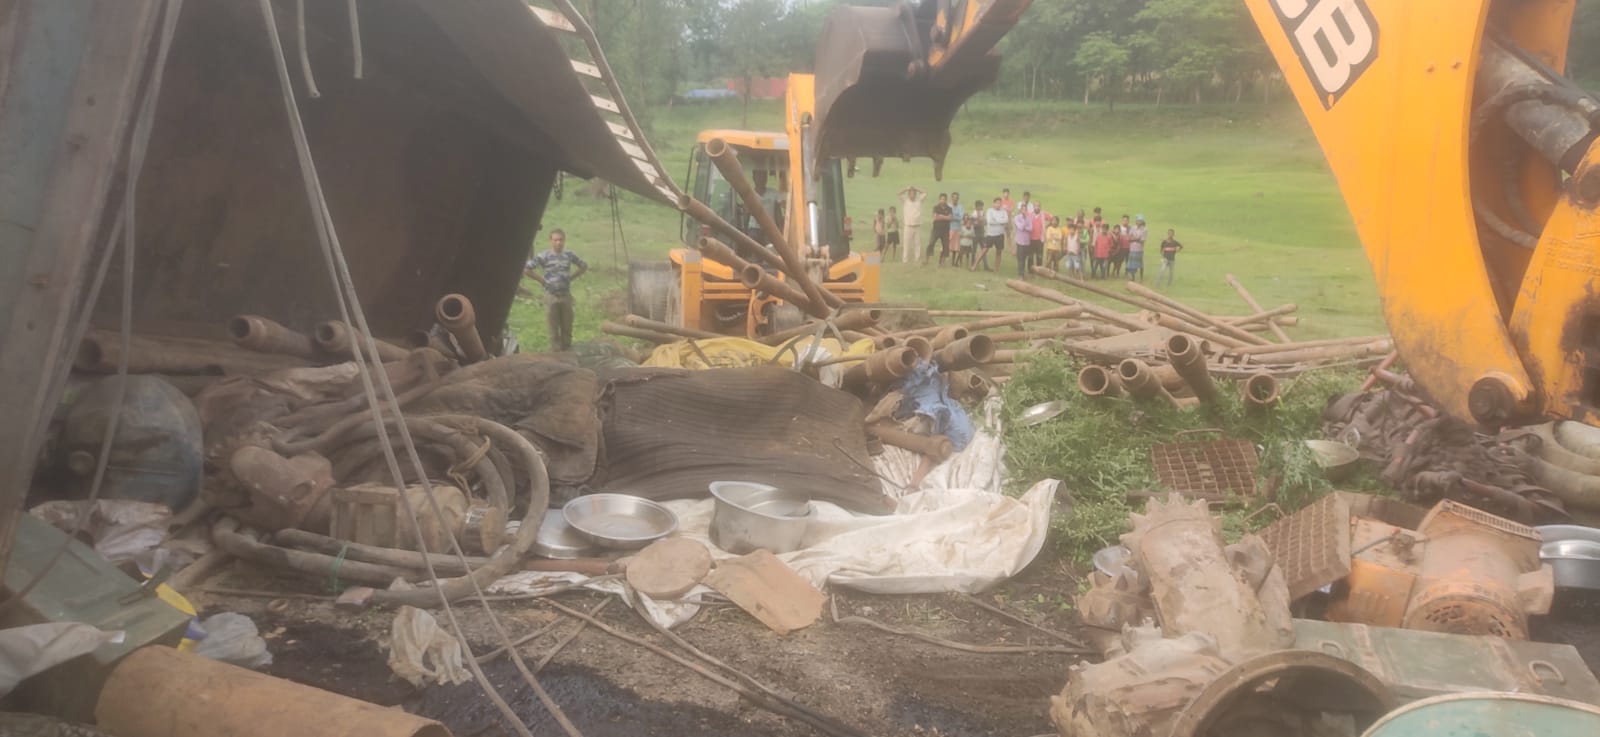 Bihar : बिहार के पूर्णिया में ट्रक पलटा, 8 मजदूरों की मौत, 5 घायल